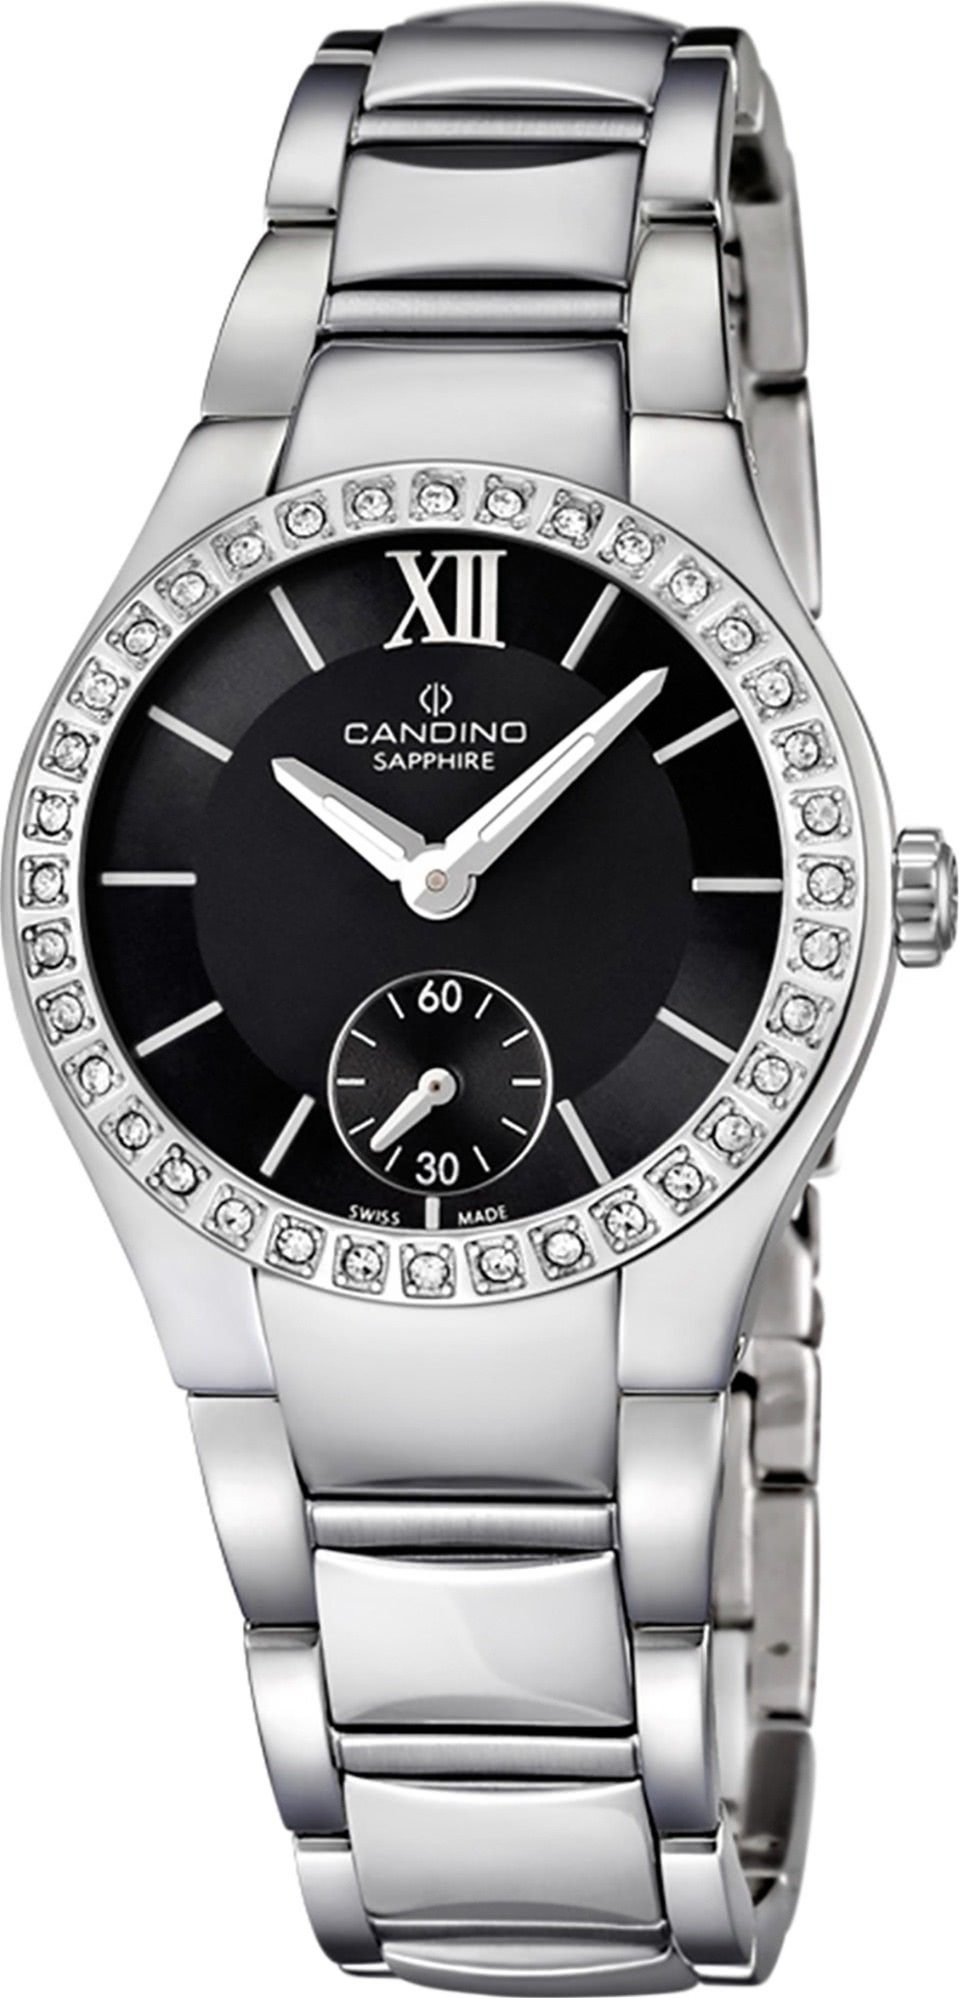 rund, Candino Edelstahlarmband Candino Quarzuhr Quarzwerk Luxus C4537/2, silber, Armbanduhr Uhr Damen Damen